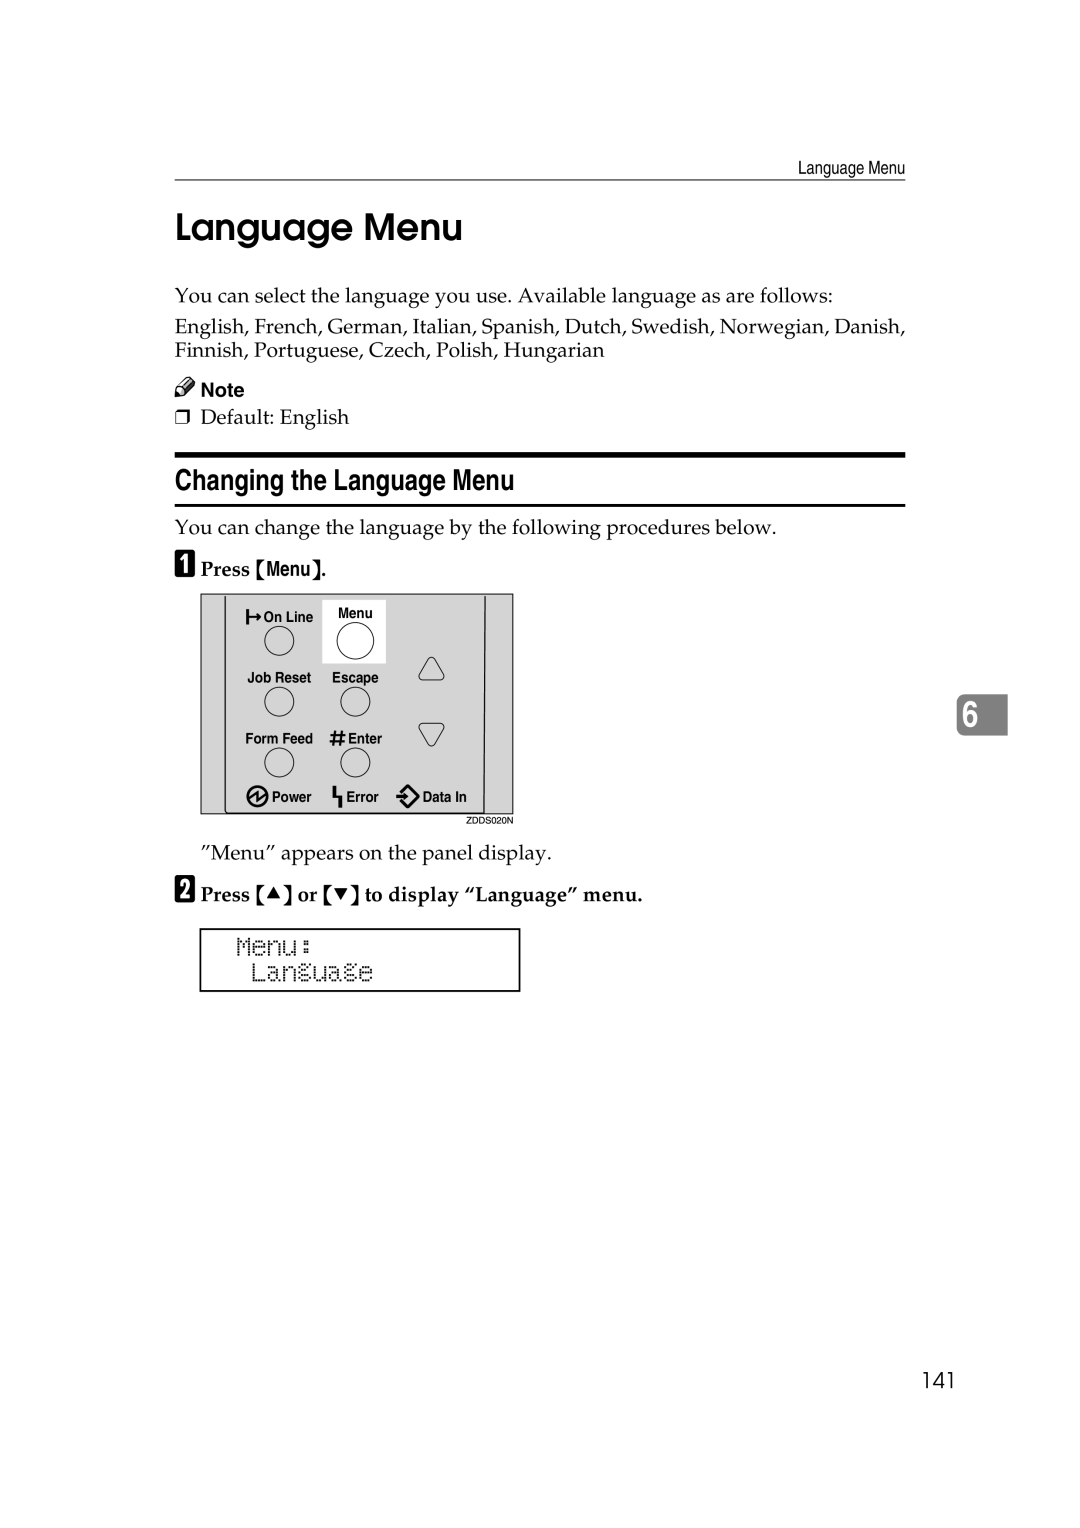 Lanier AP2610 manual Changing the Language Menu, Menu Language, 141, Press U or T to display Language menu 